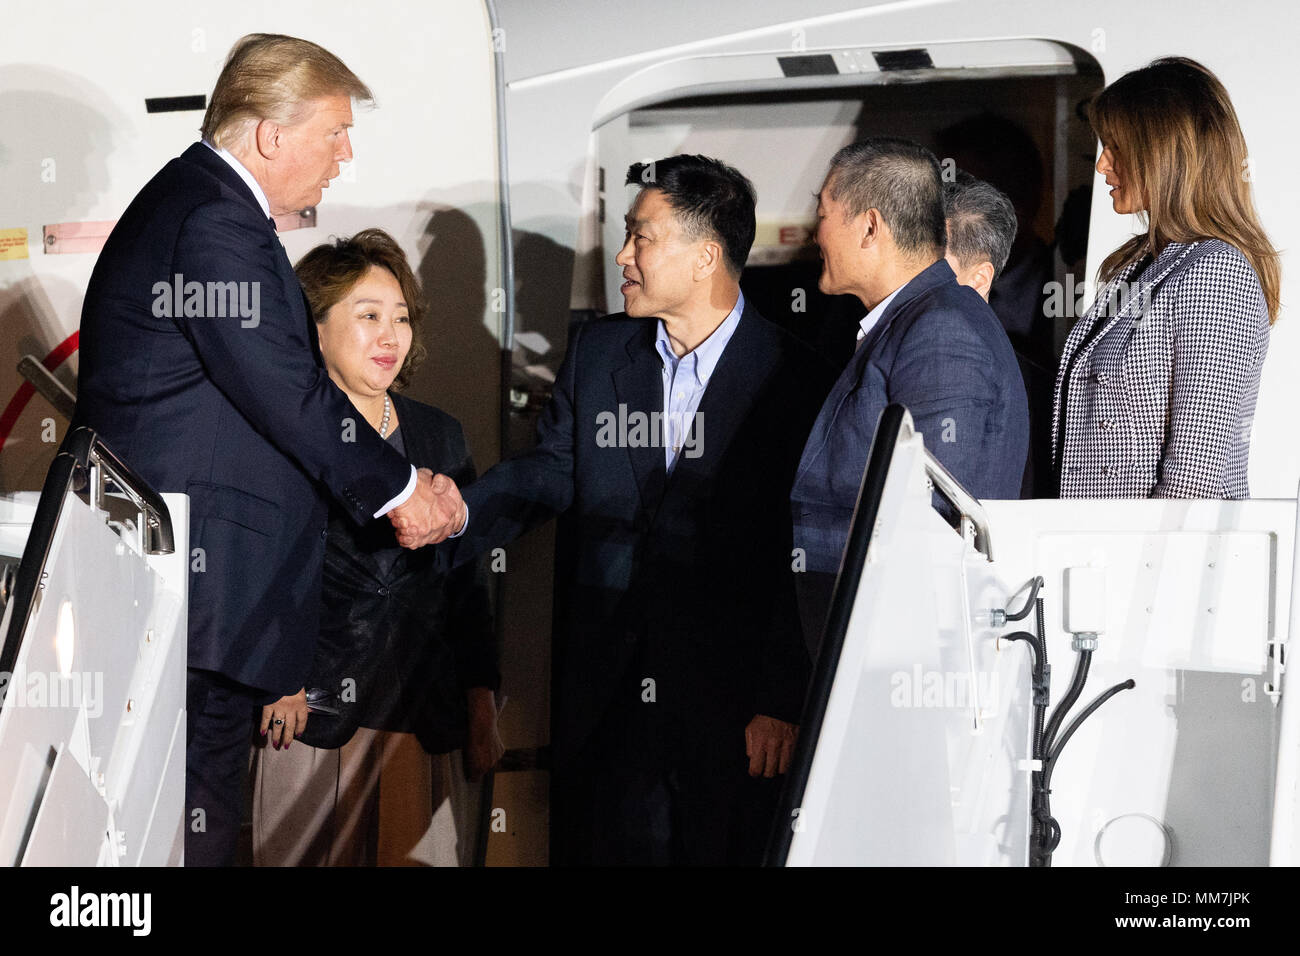 Präsident Donald Trump und seine Frau Melania begrüßte die drei amerikanischen Häftlinge (Kim Dong-chul, Kim Hak-Song, und Tony Kim) in Gefangenschaft in Nordkorea am Joint Base Andrews statt in Suitland. Stockfoto